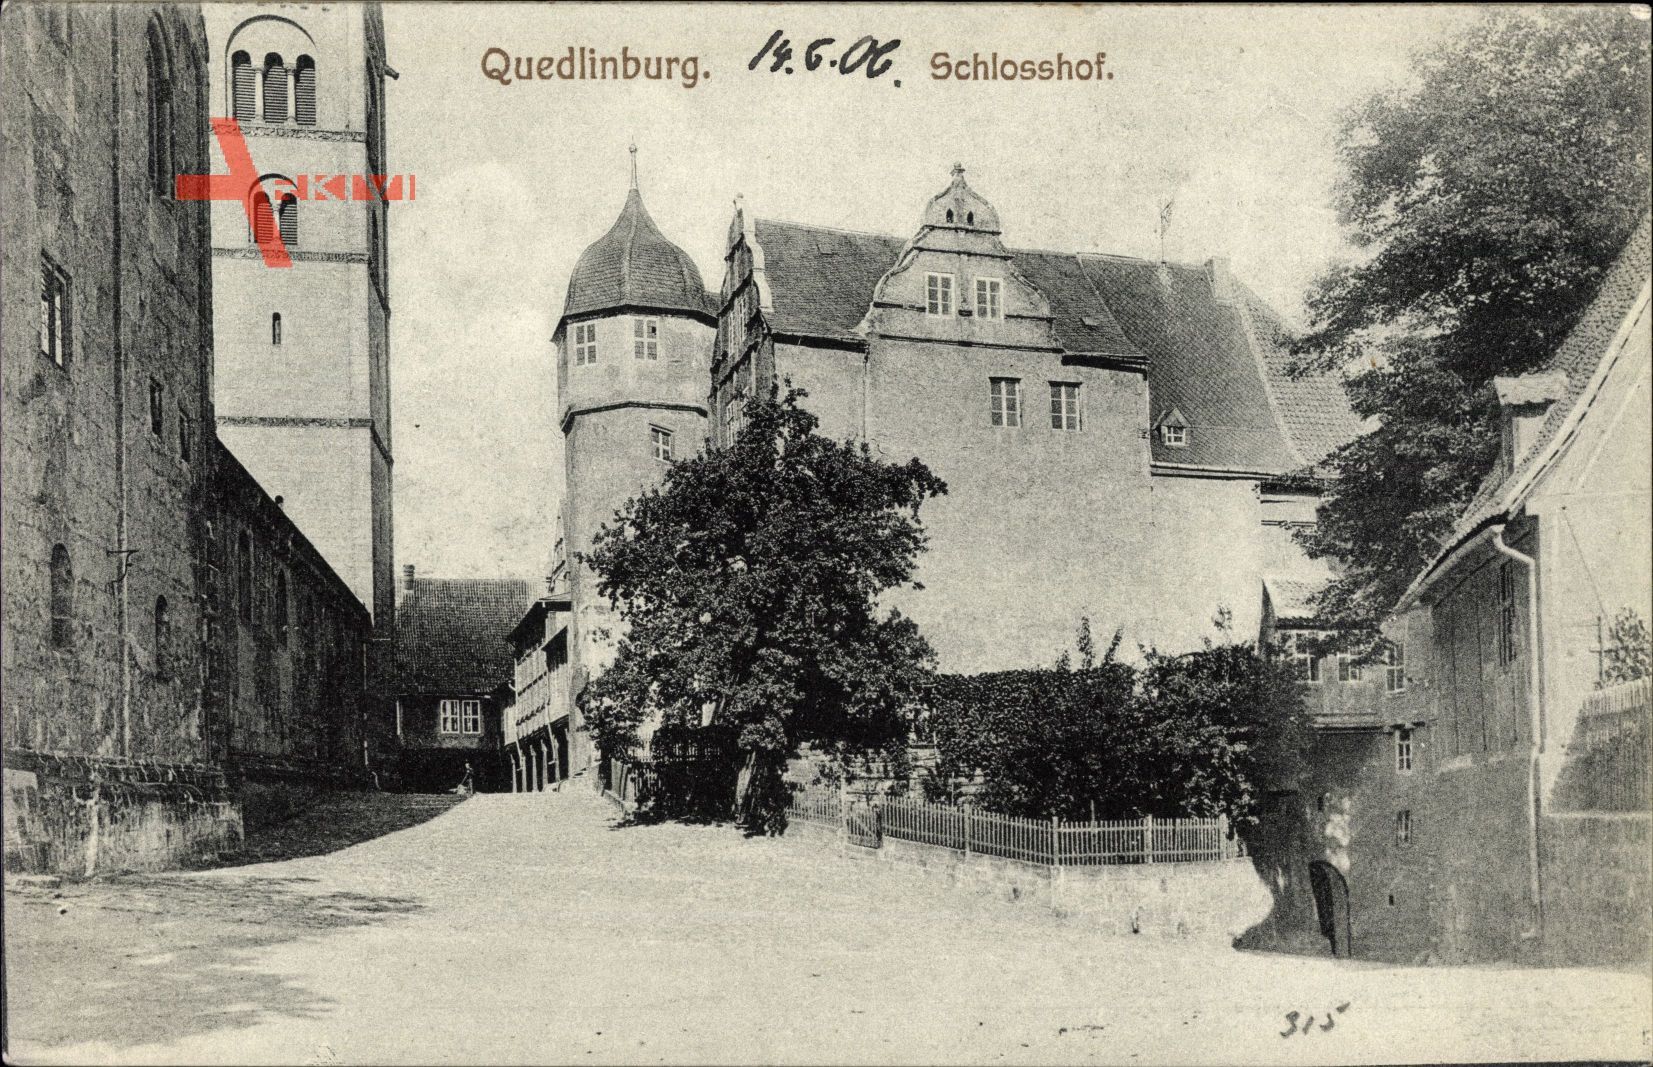 Quedlinburg im Harz, Blick vom Schlosshof auf das Schloss